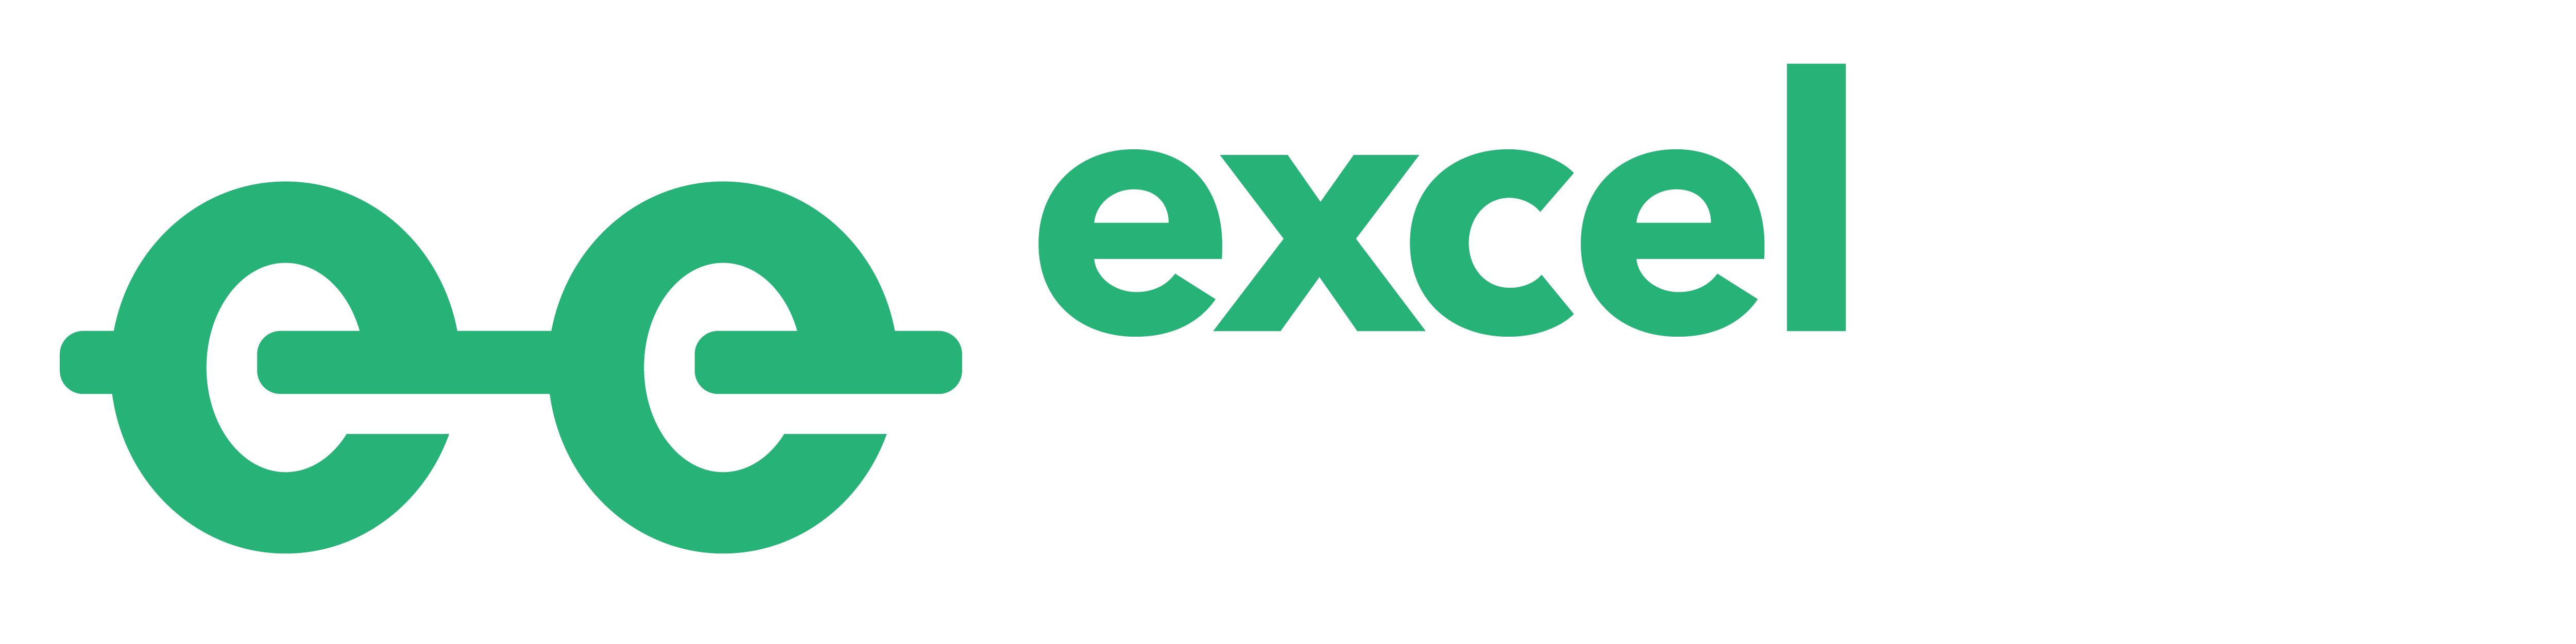 Excel Exercises logo